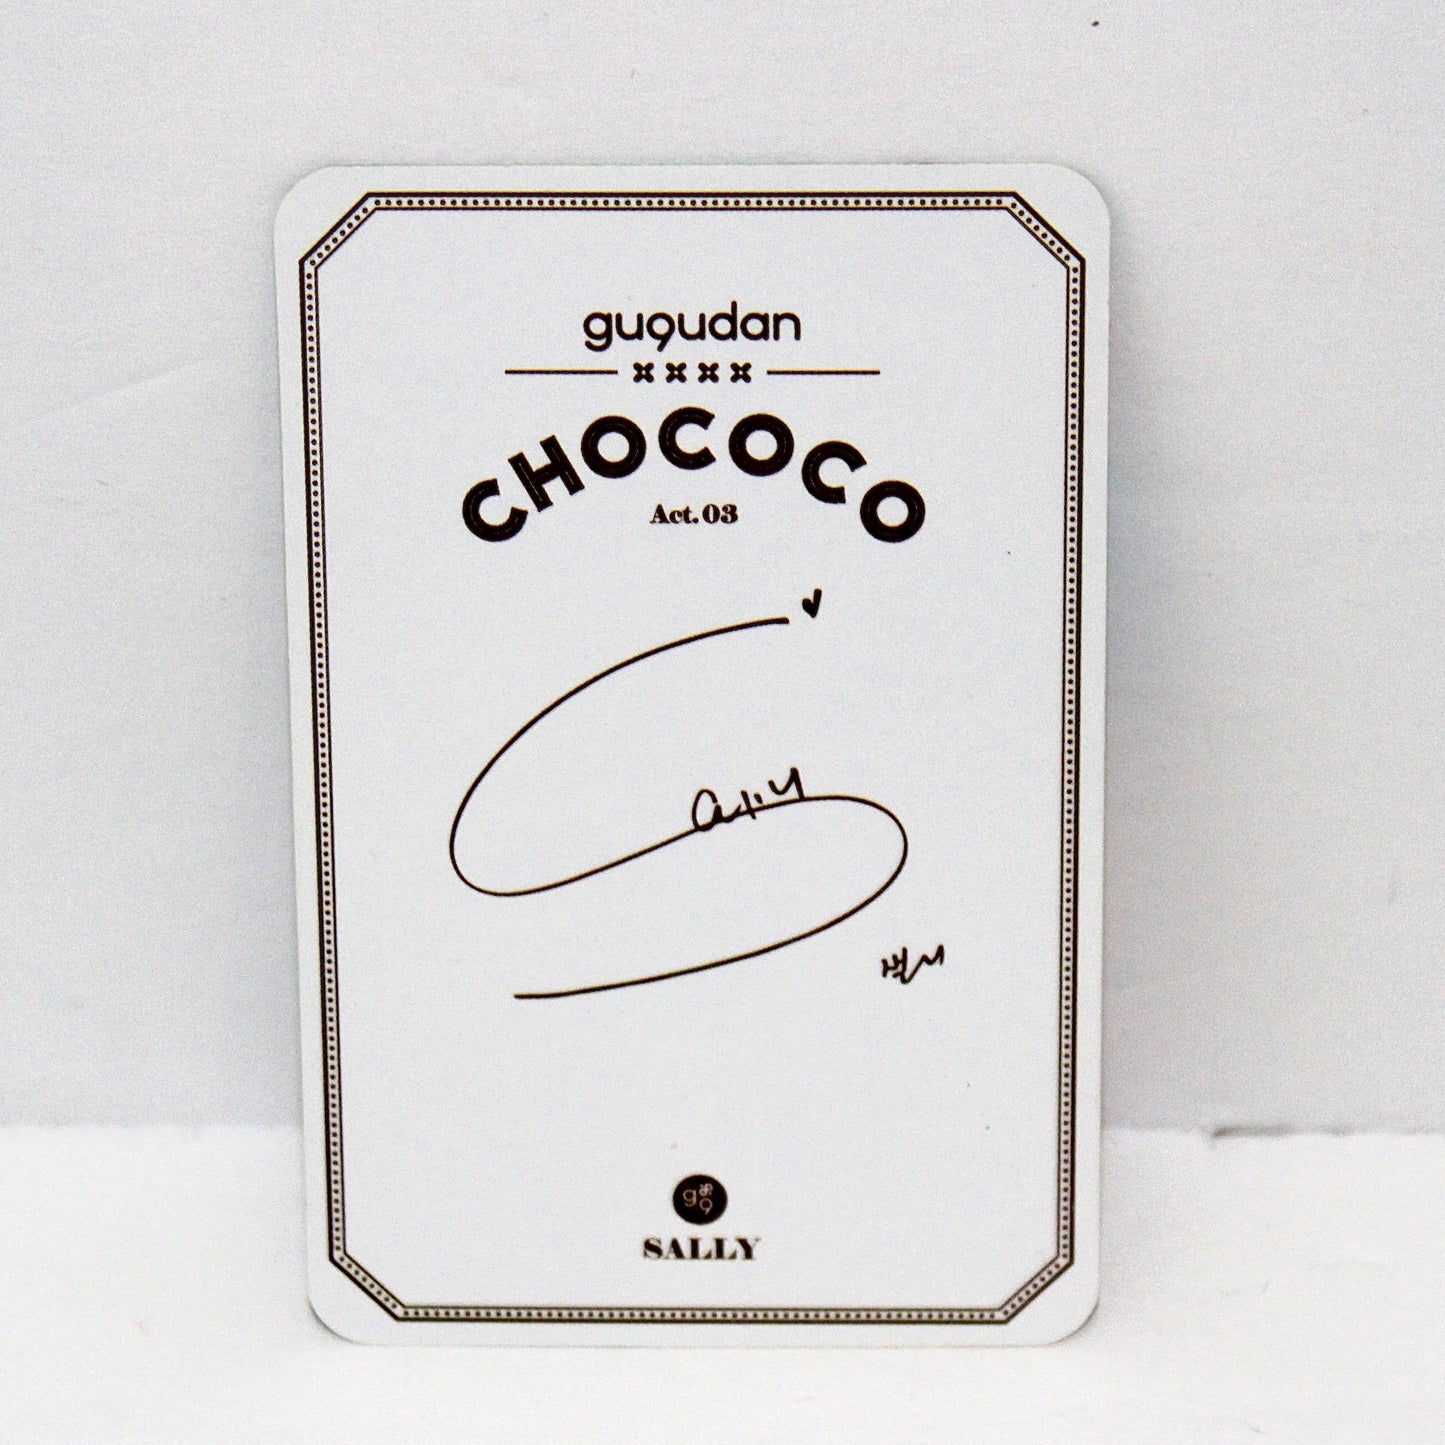 GUGUDAN 1st Single Album: Chococo Factory | Inclusions